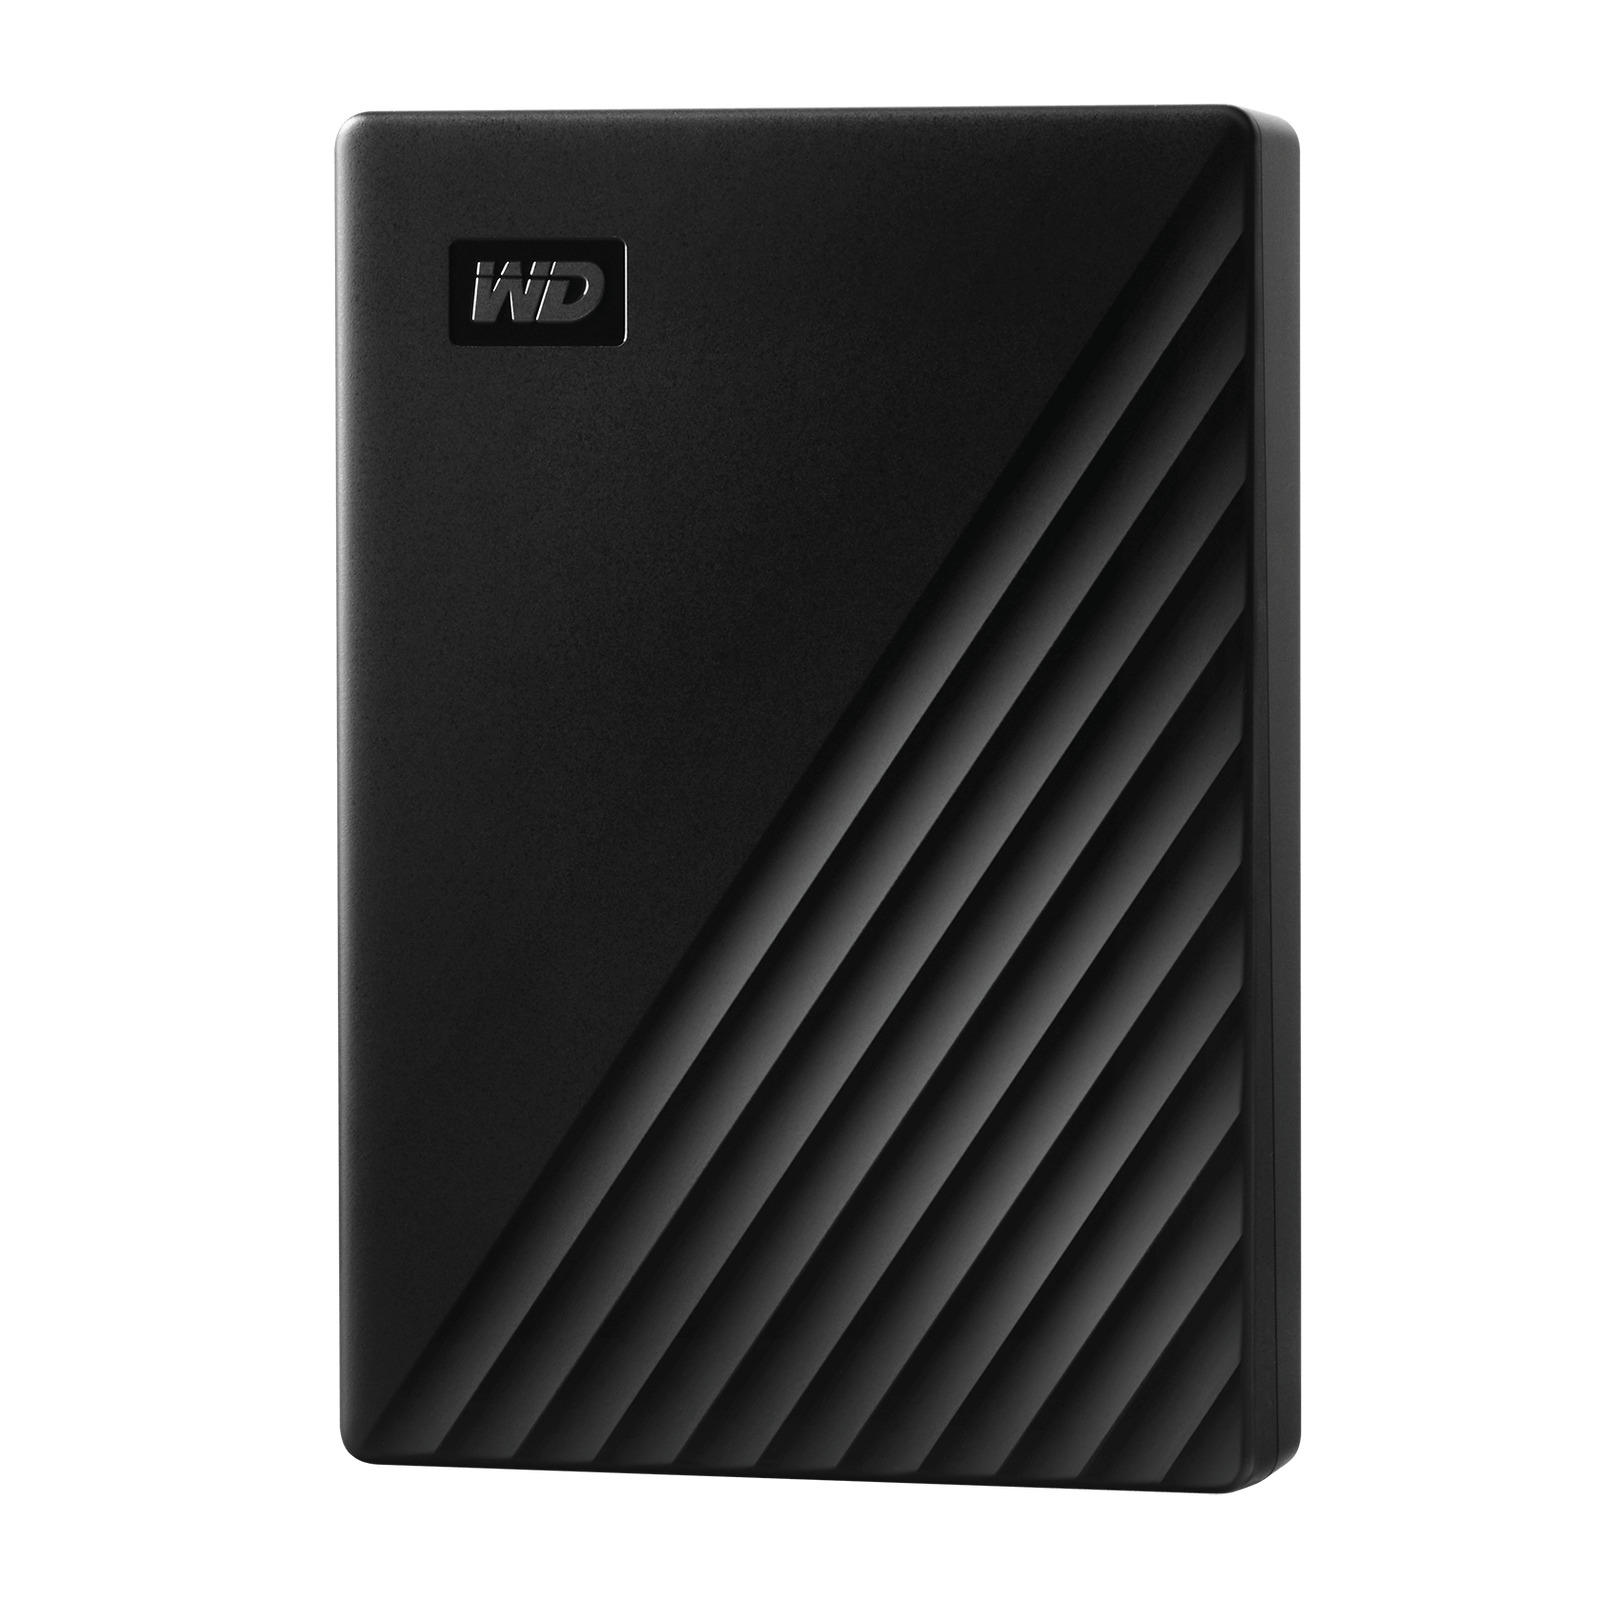 WD 5TB My Passport, Portable External Hard Drive, Black - WDBPKJ0050BBK-WESN